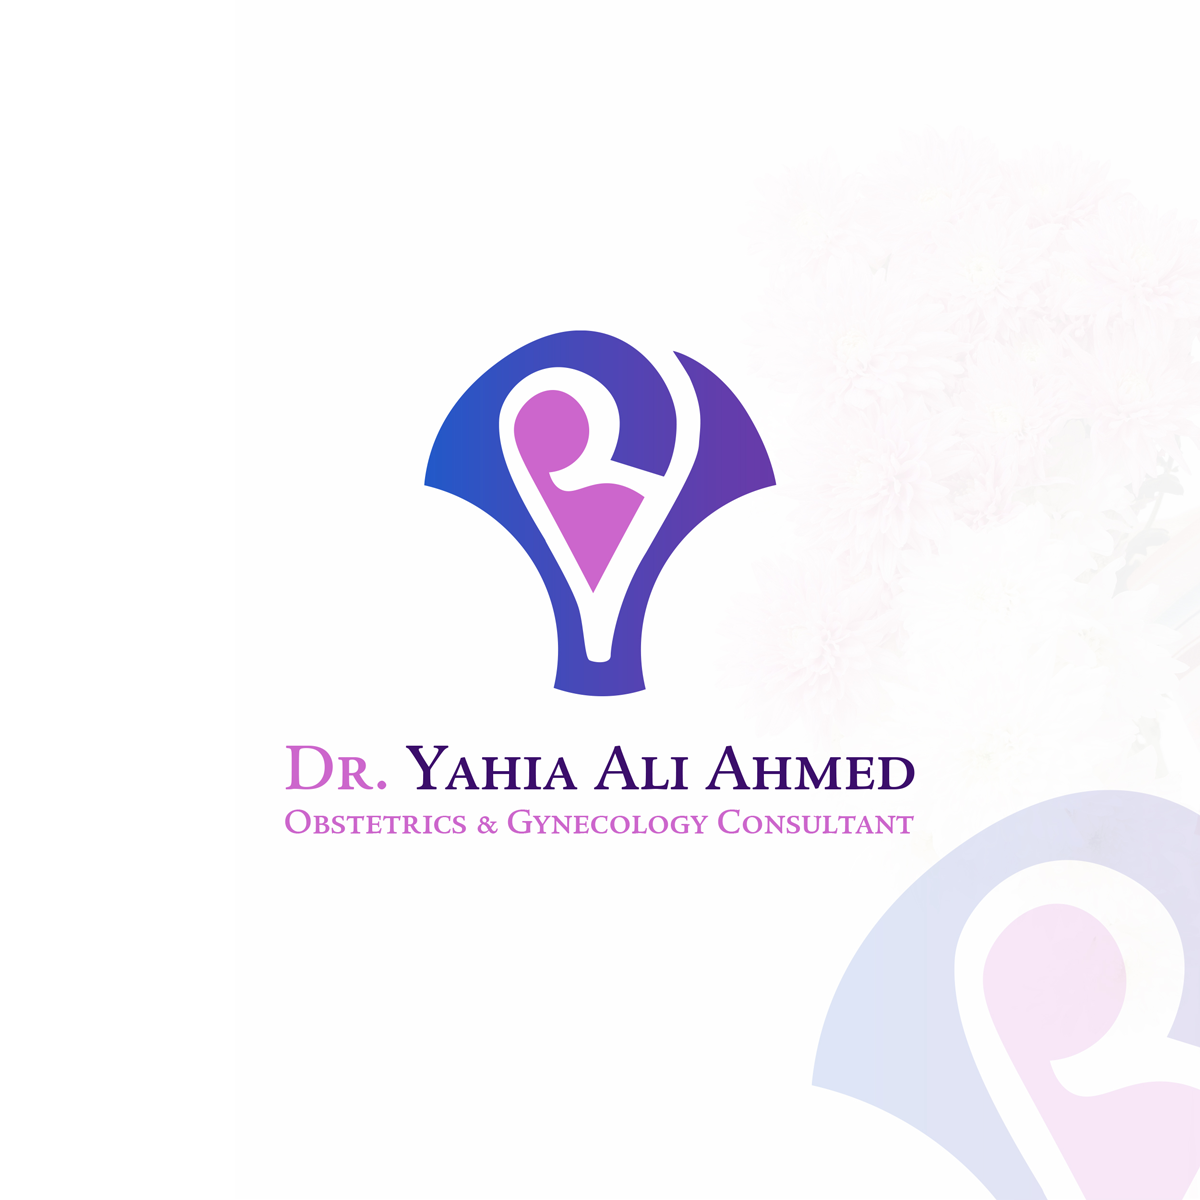 Dr. Yehia Ali Ahmed